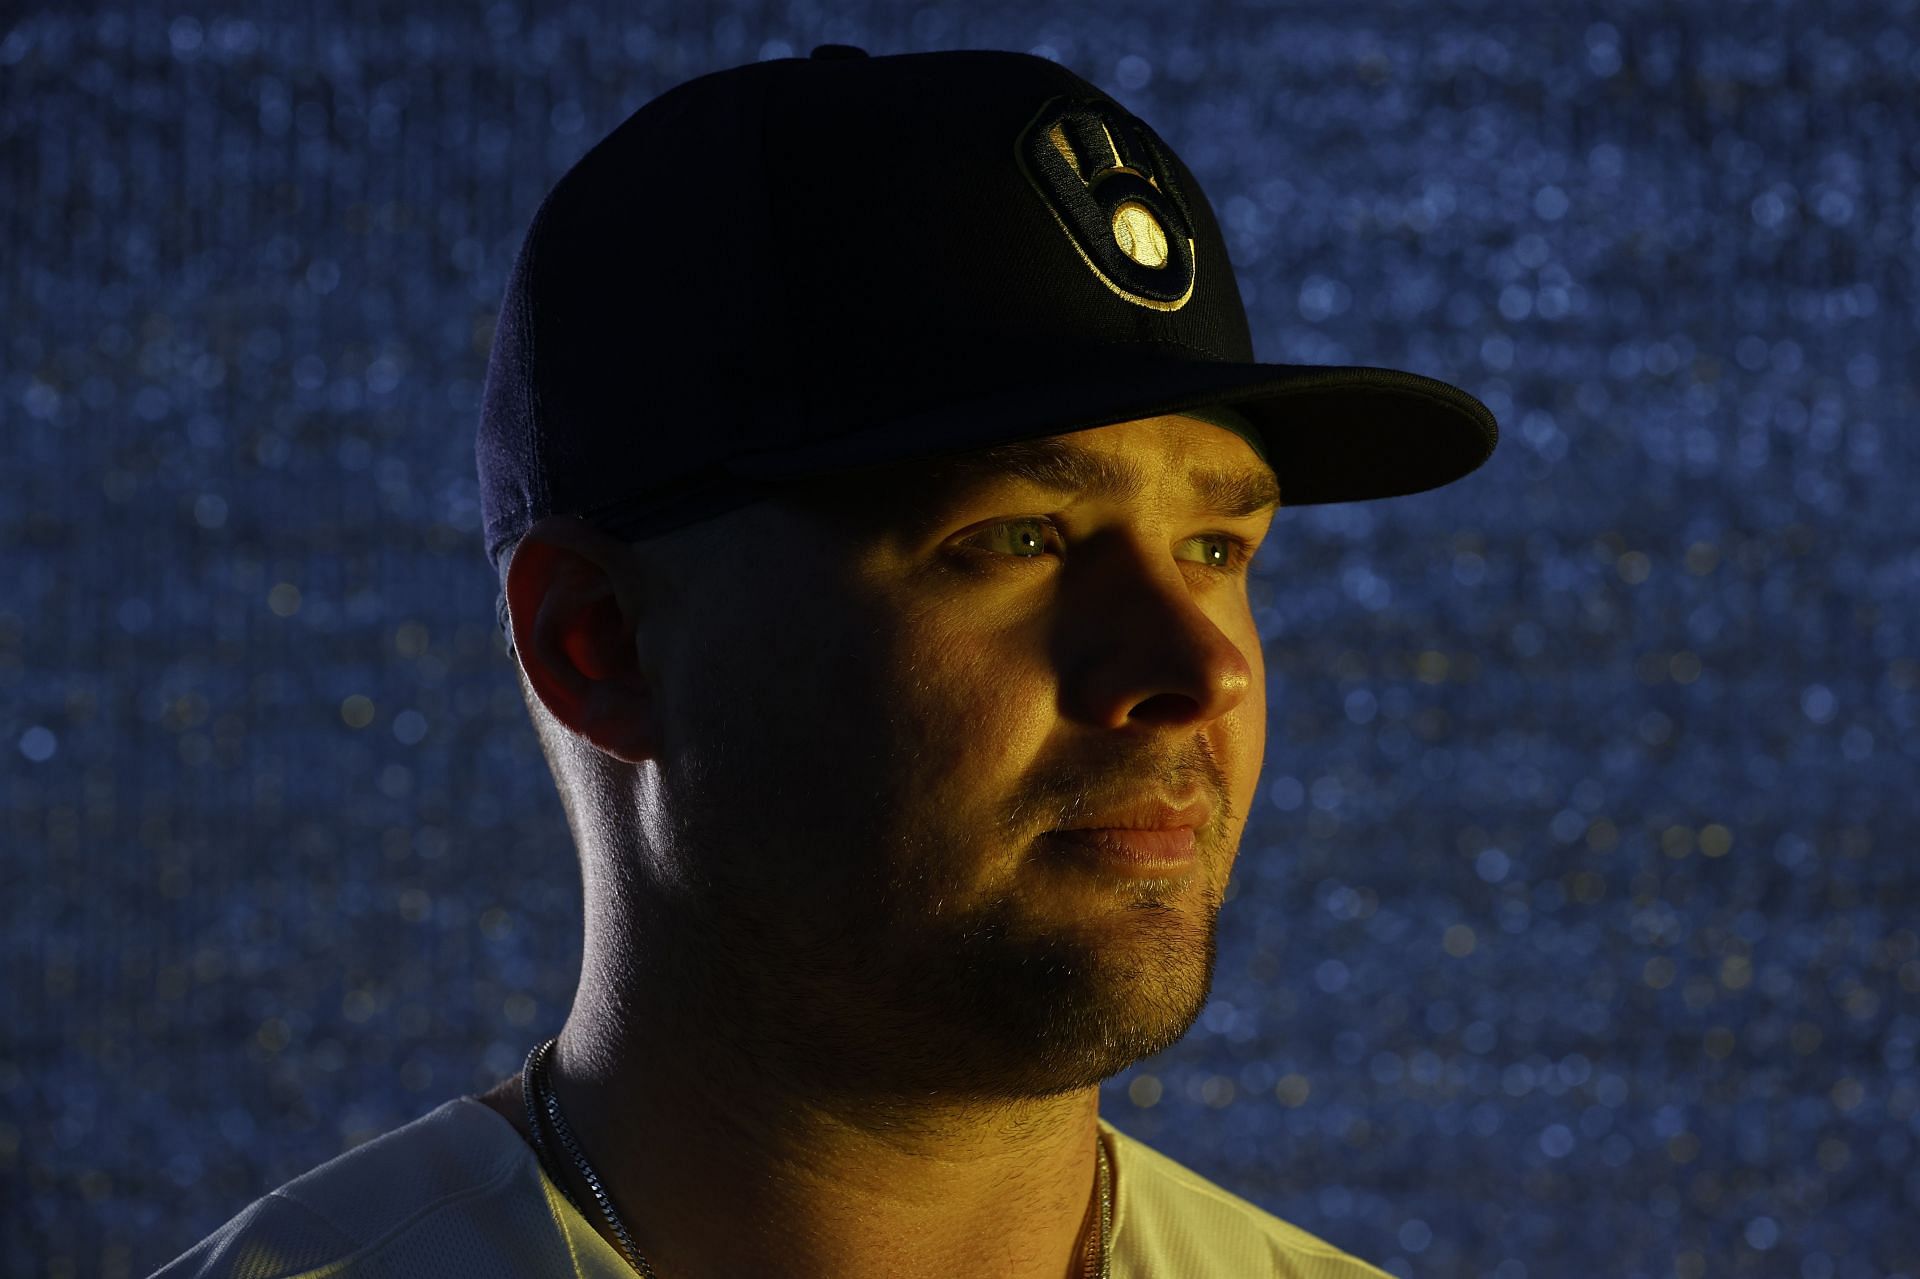 Luke Voit Is Baseball's New Home Run King - The Ringer